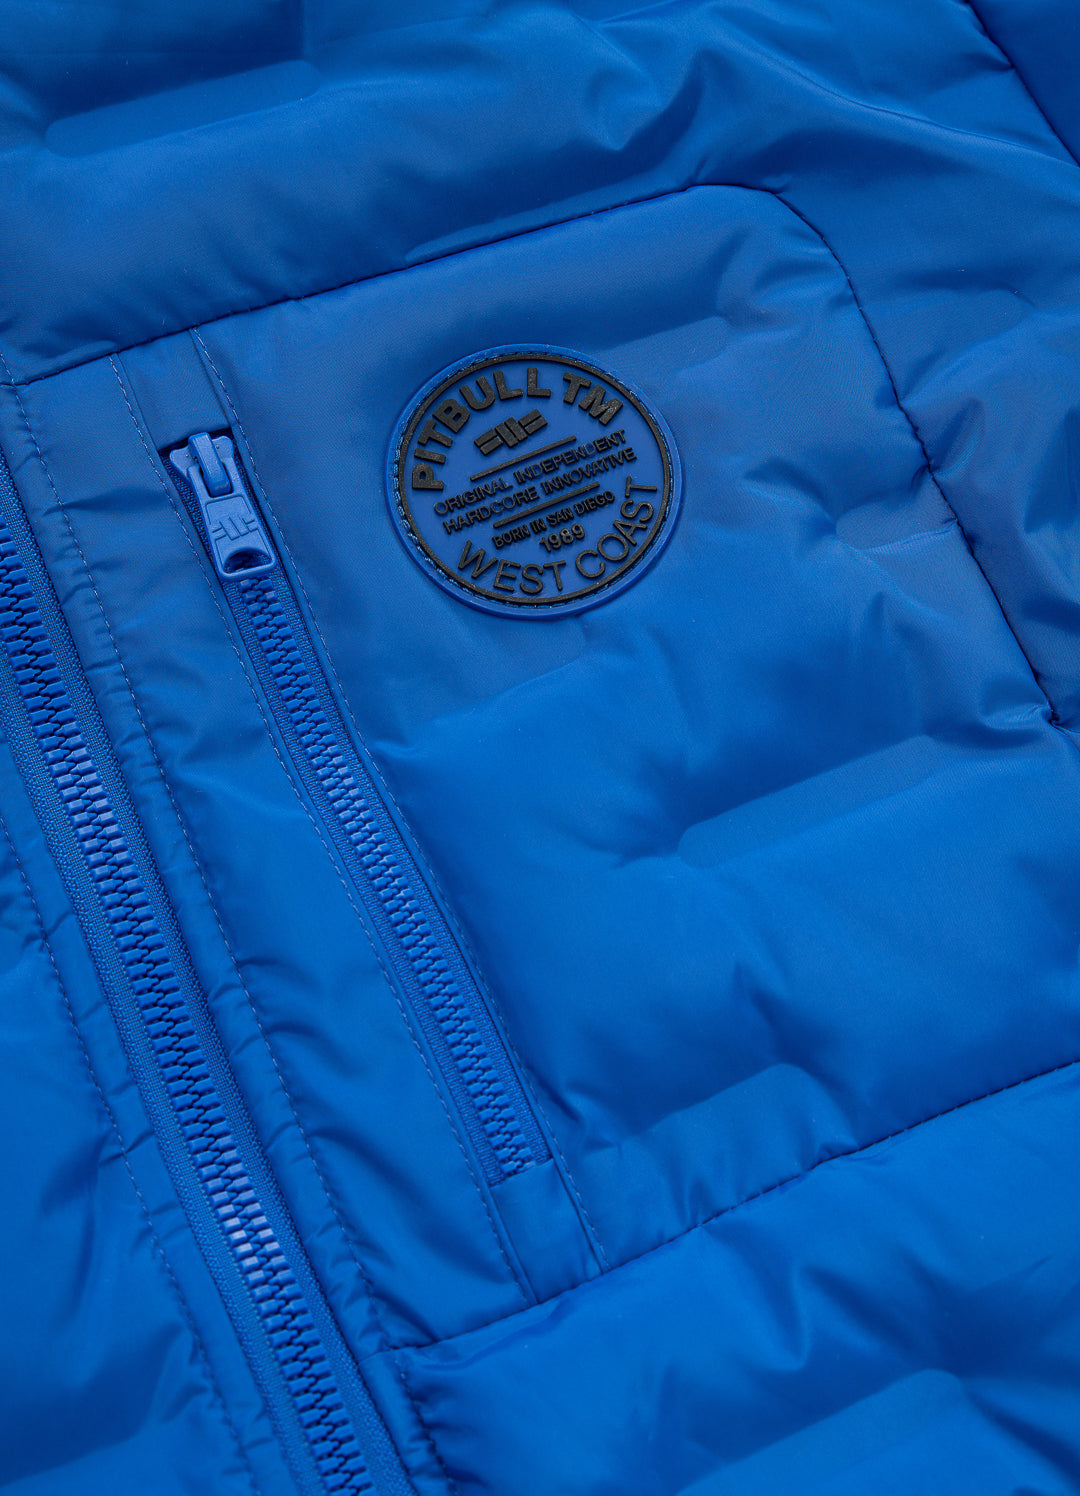 FIRESTONE Blue Jacket.